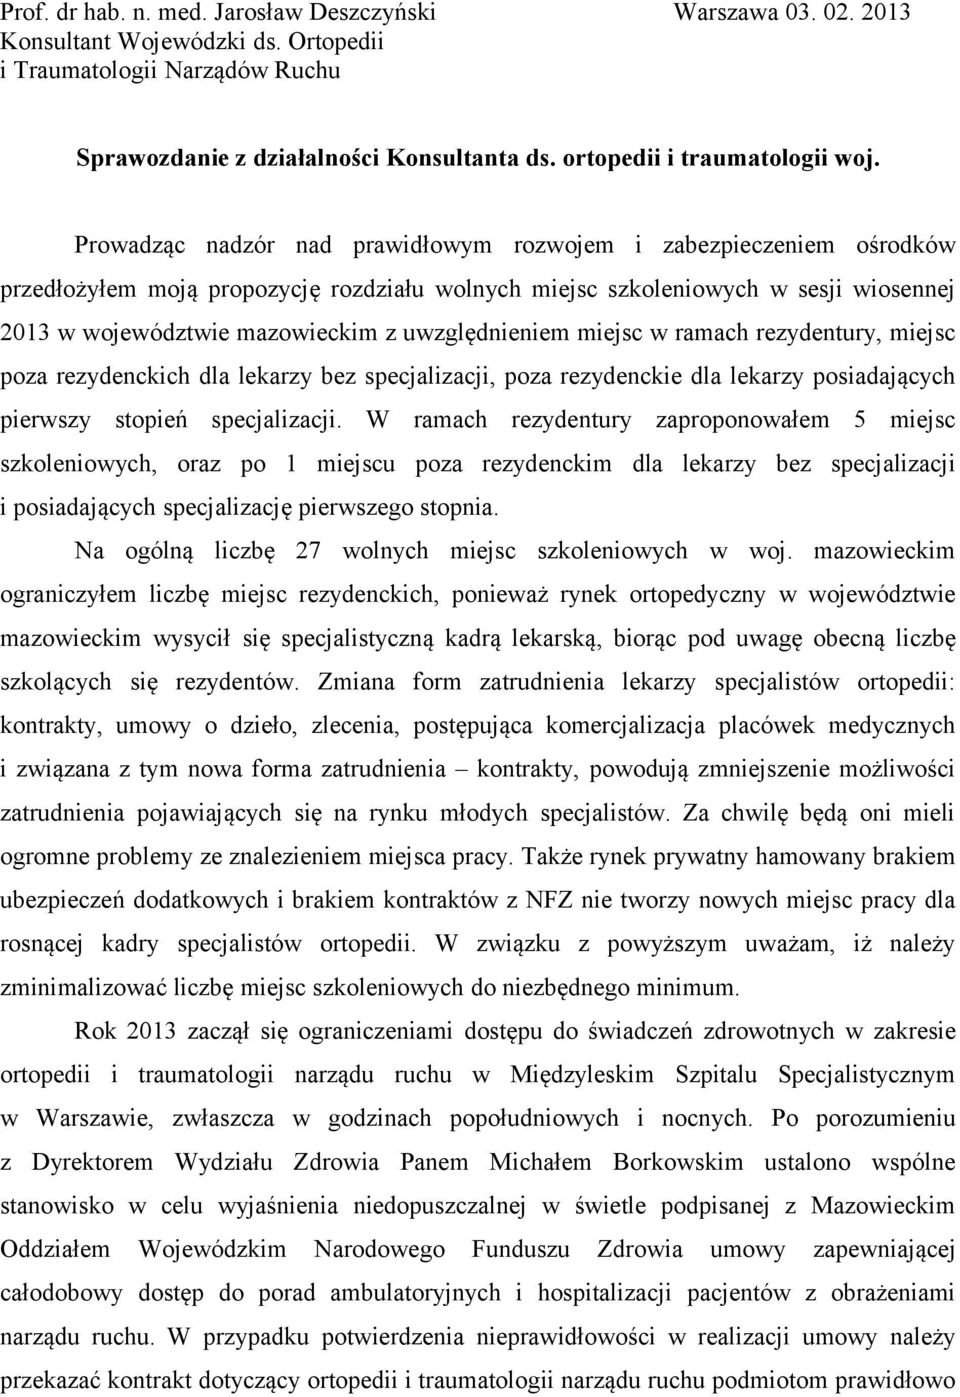 Prowadząc nadzór nad prawidłowym rozwojem i zabezpieczeniem ośrodków przedłożyłem moją propozycję rozdziału wolnych miejsc szkoleniowych w sesji wiosennej 2013 w województwie mazowieckim z